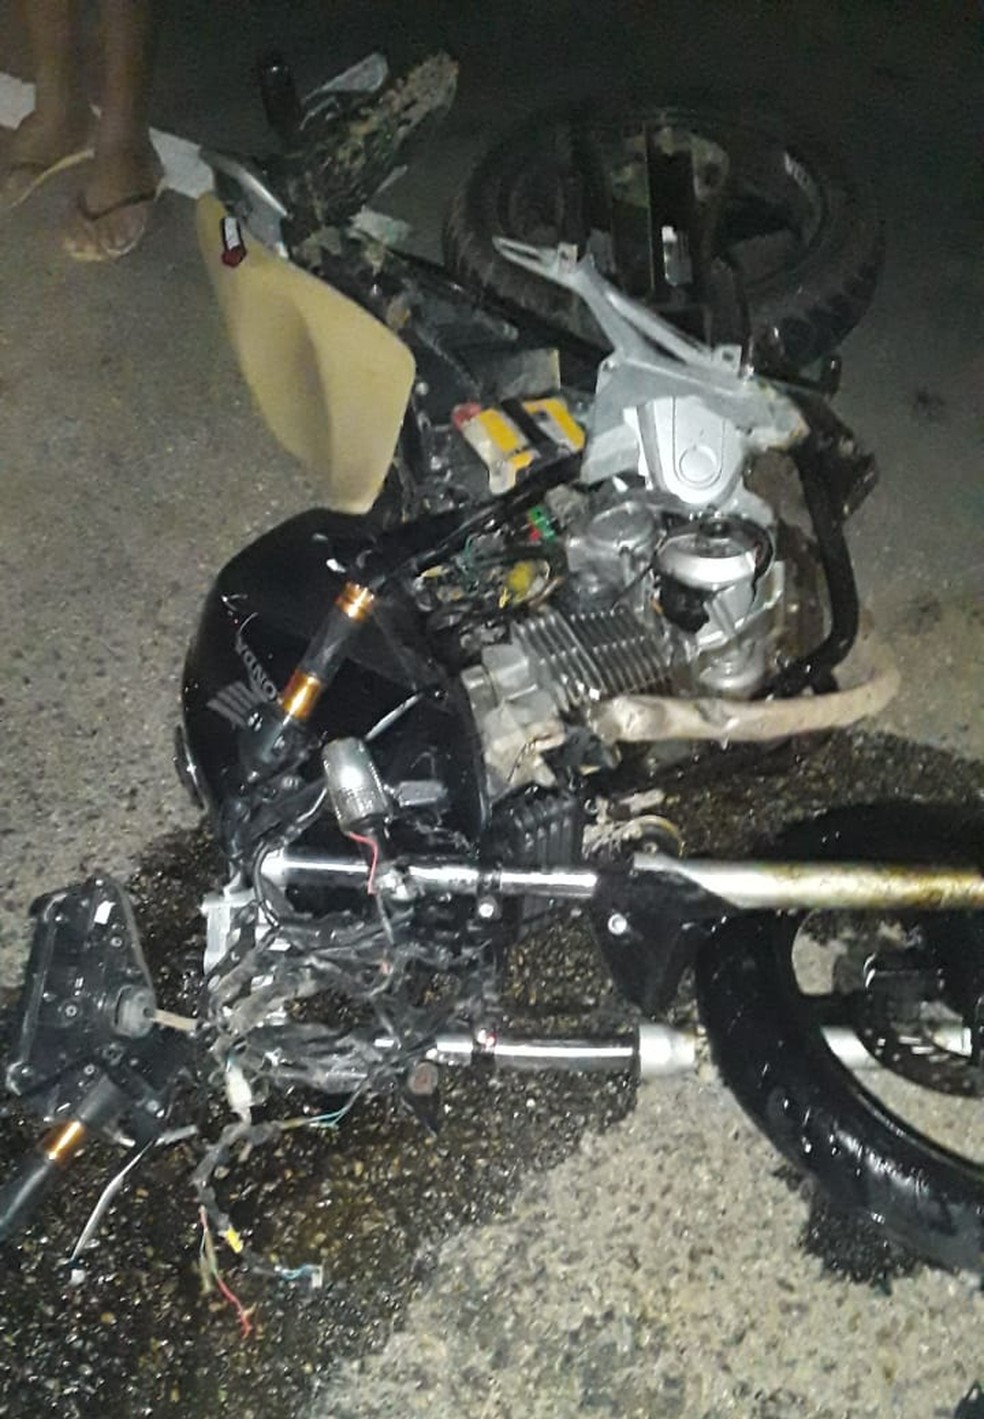 Adolescente morre em acidente horas depois de comprar moto de trilha no  Meio-Oeste de SC